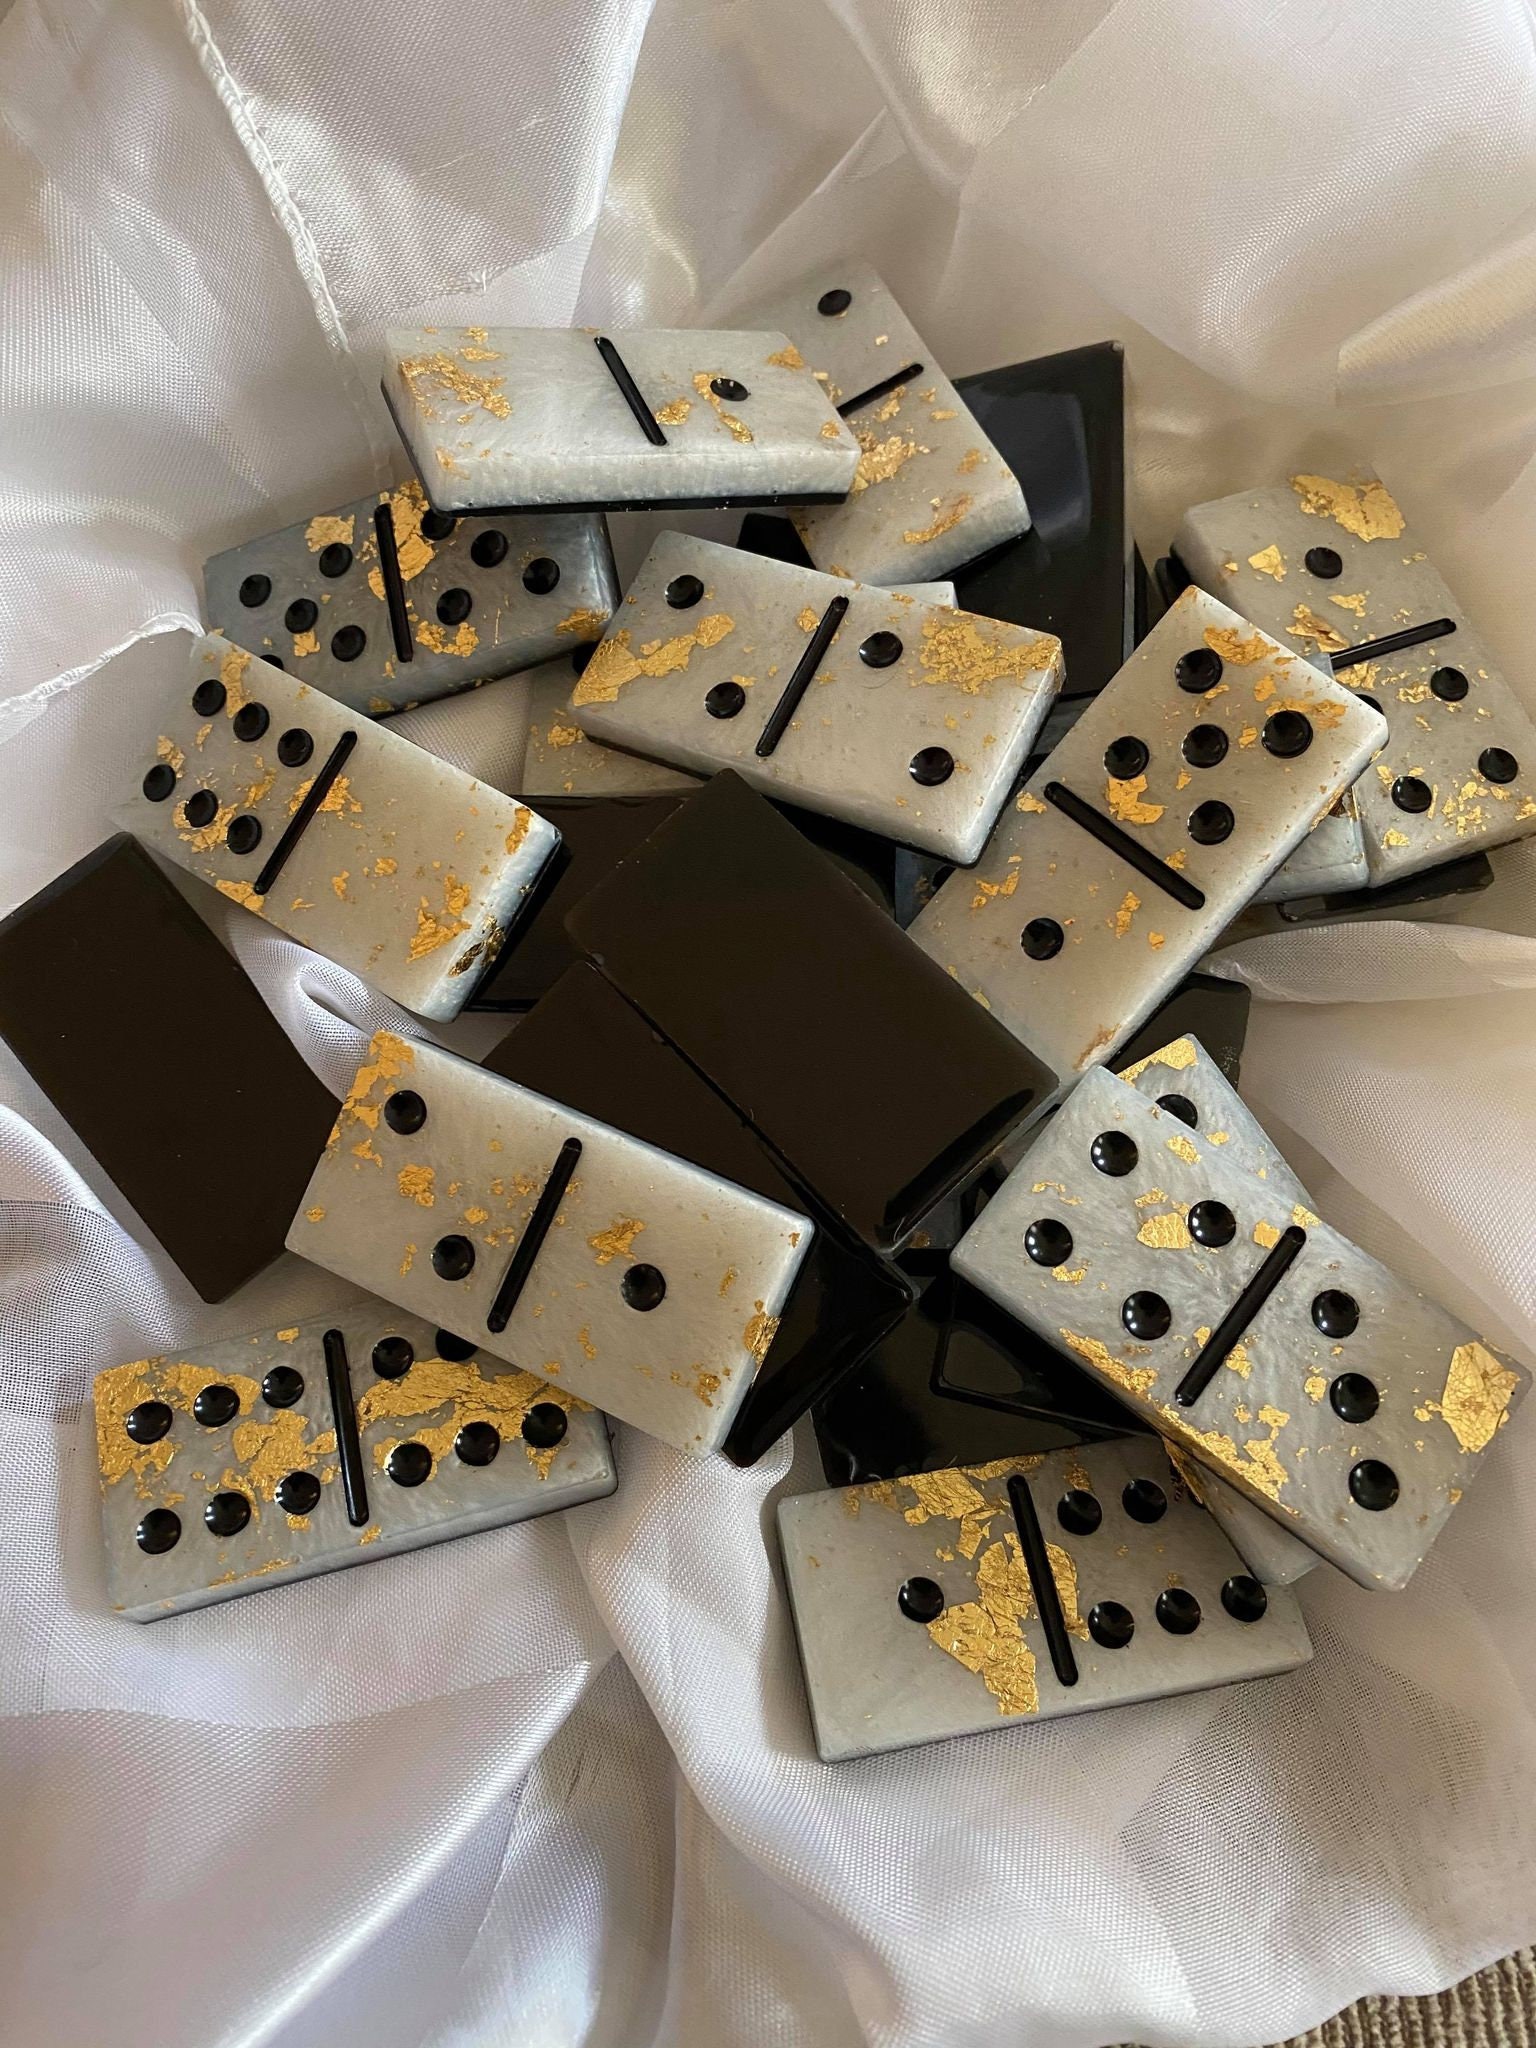 Domino couleur traditionnel - Jeu de dominos classiques en résine